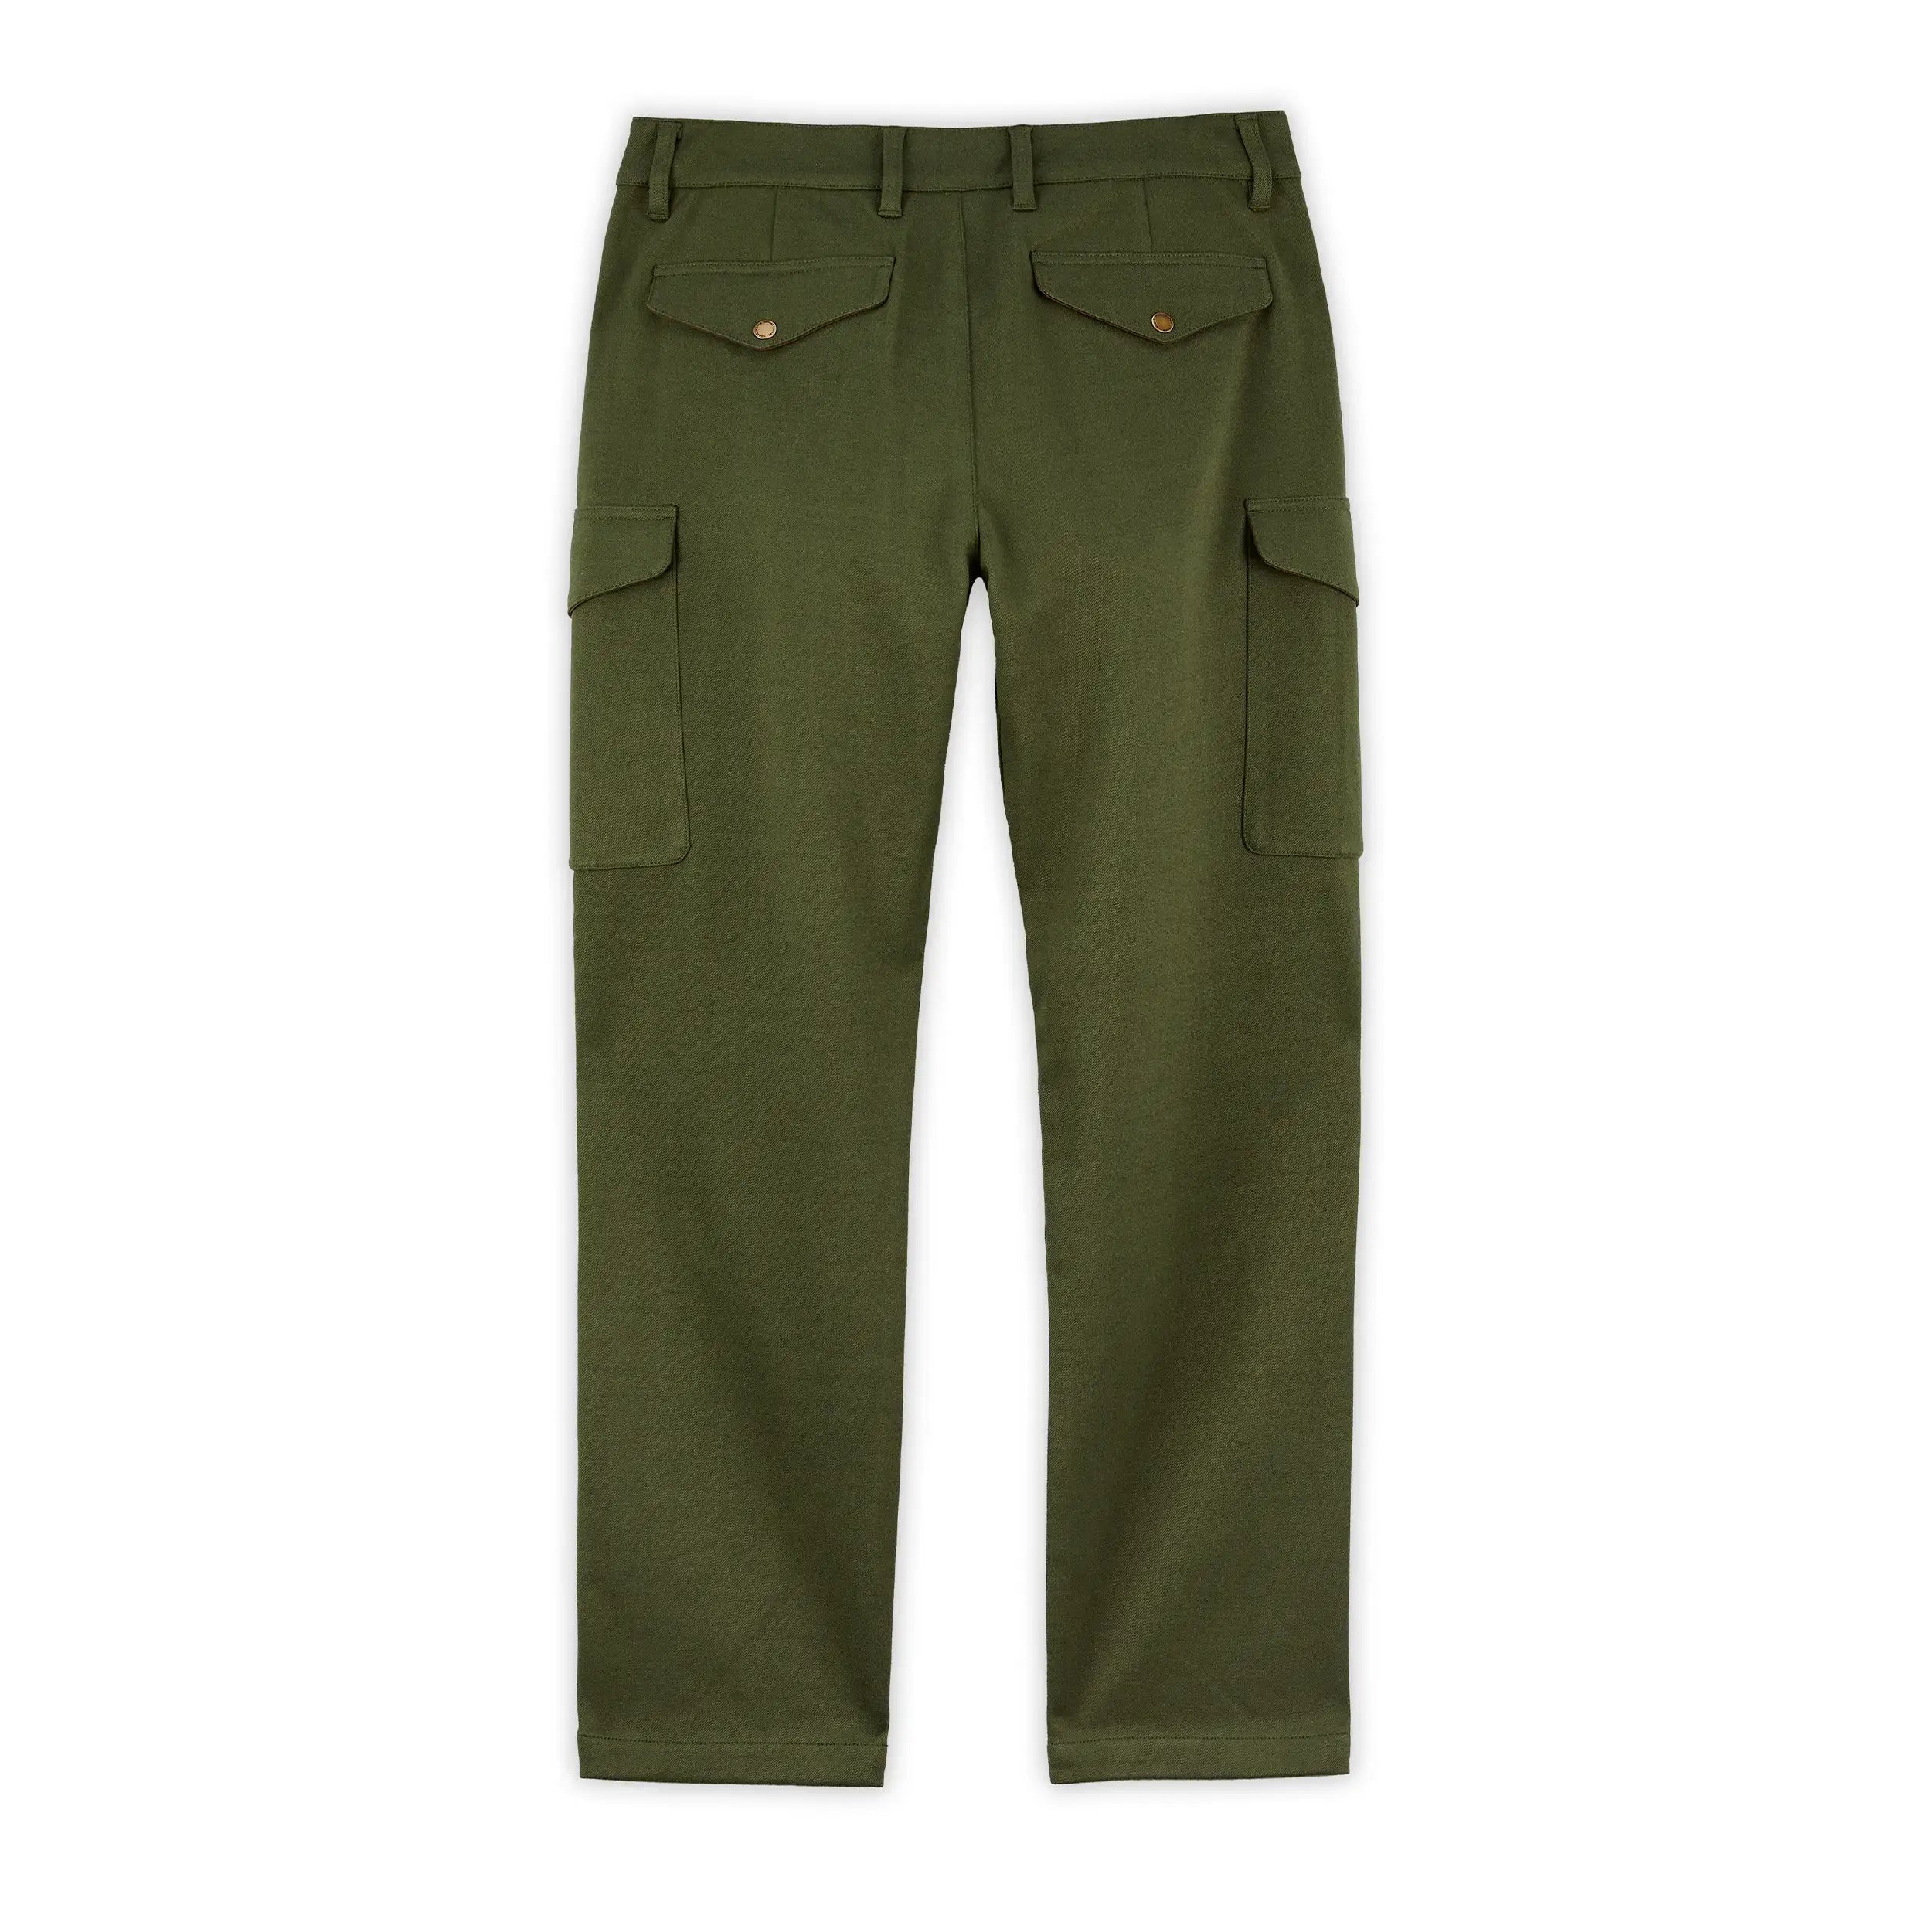 LA Gear Women's Cargo Pants - Olive Green - Size 10